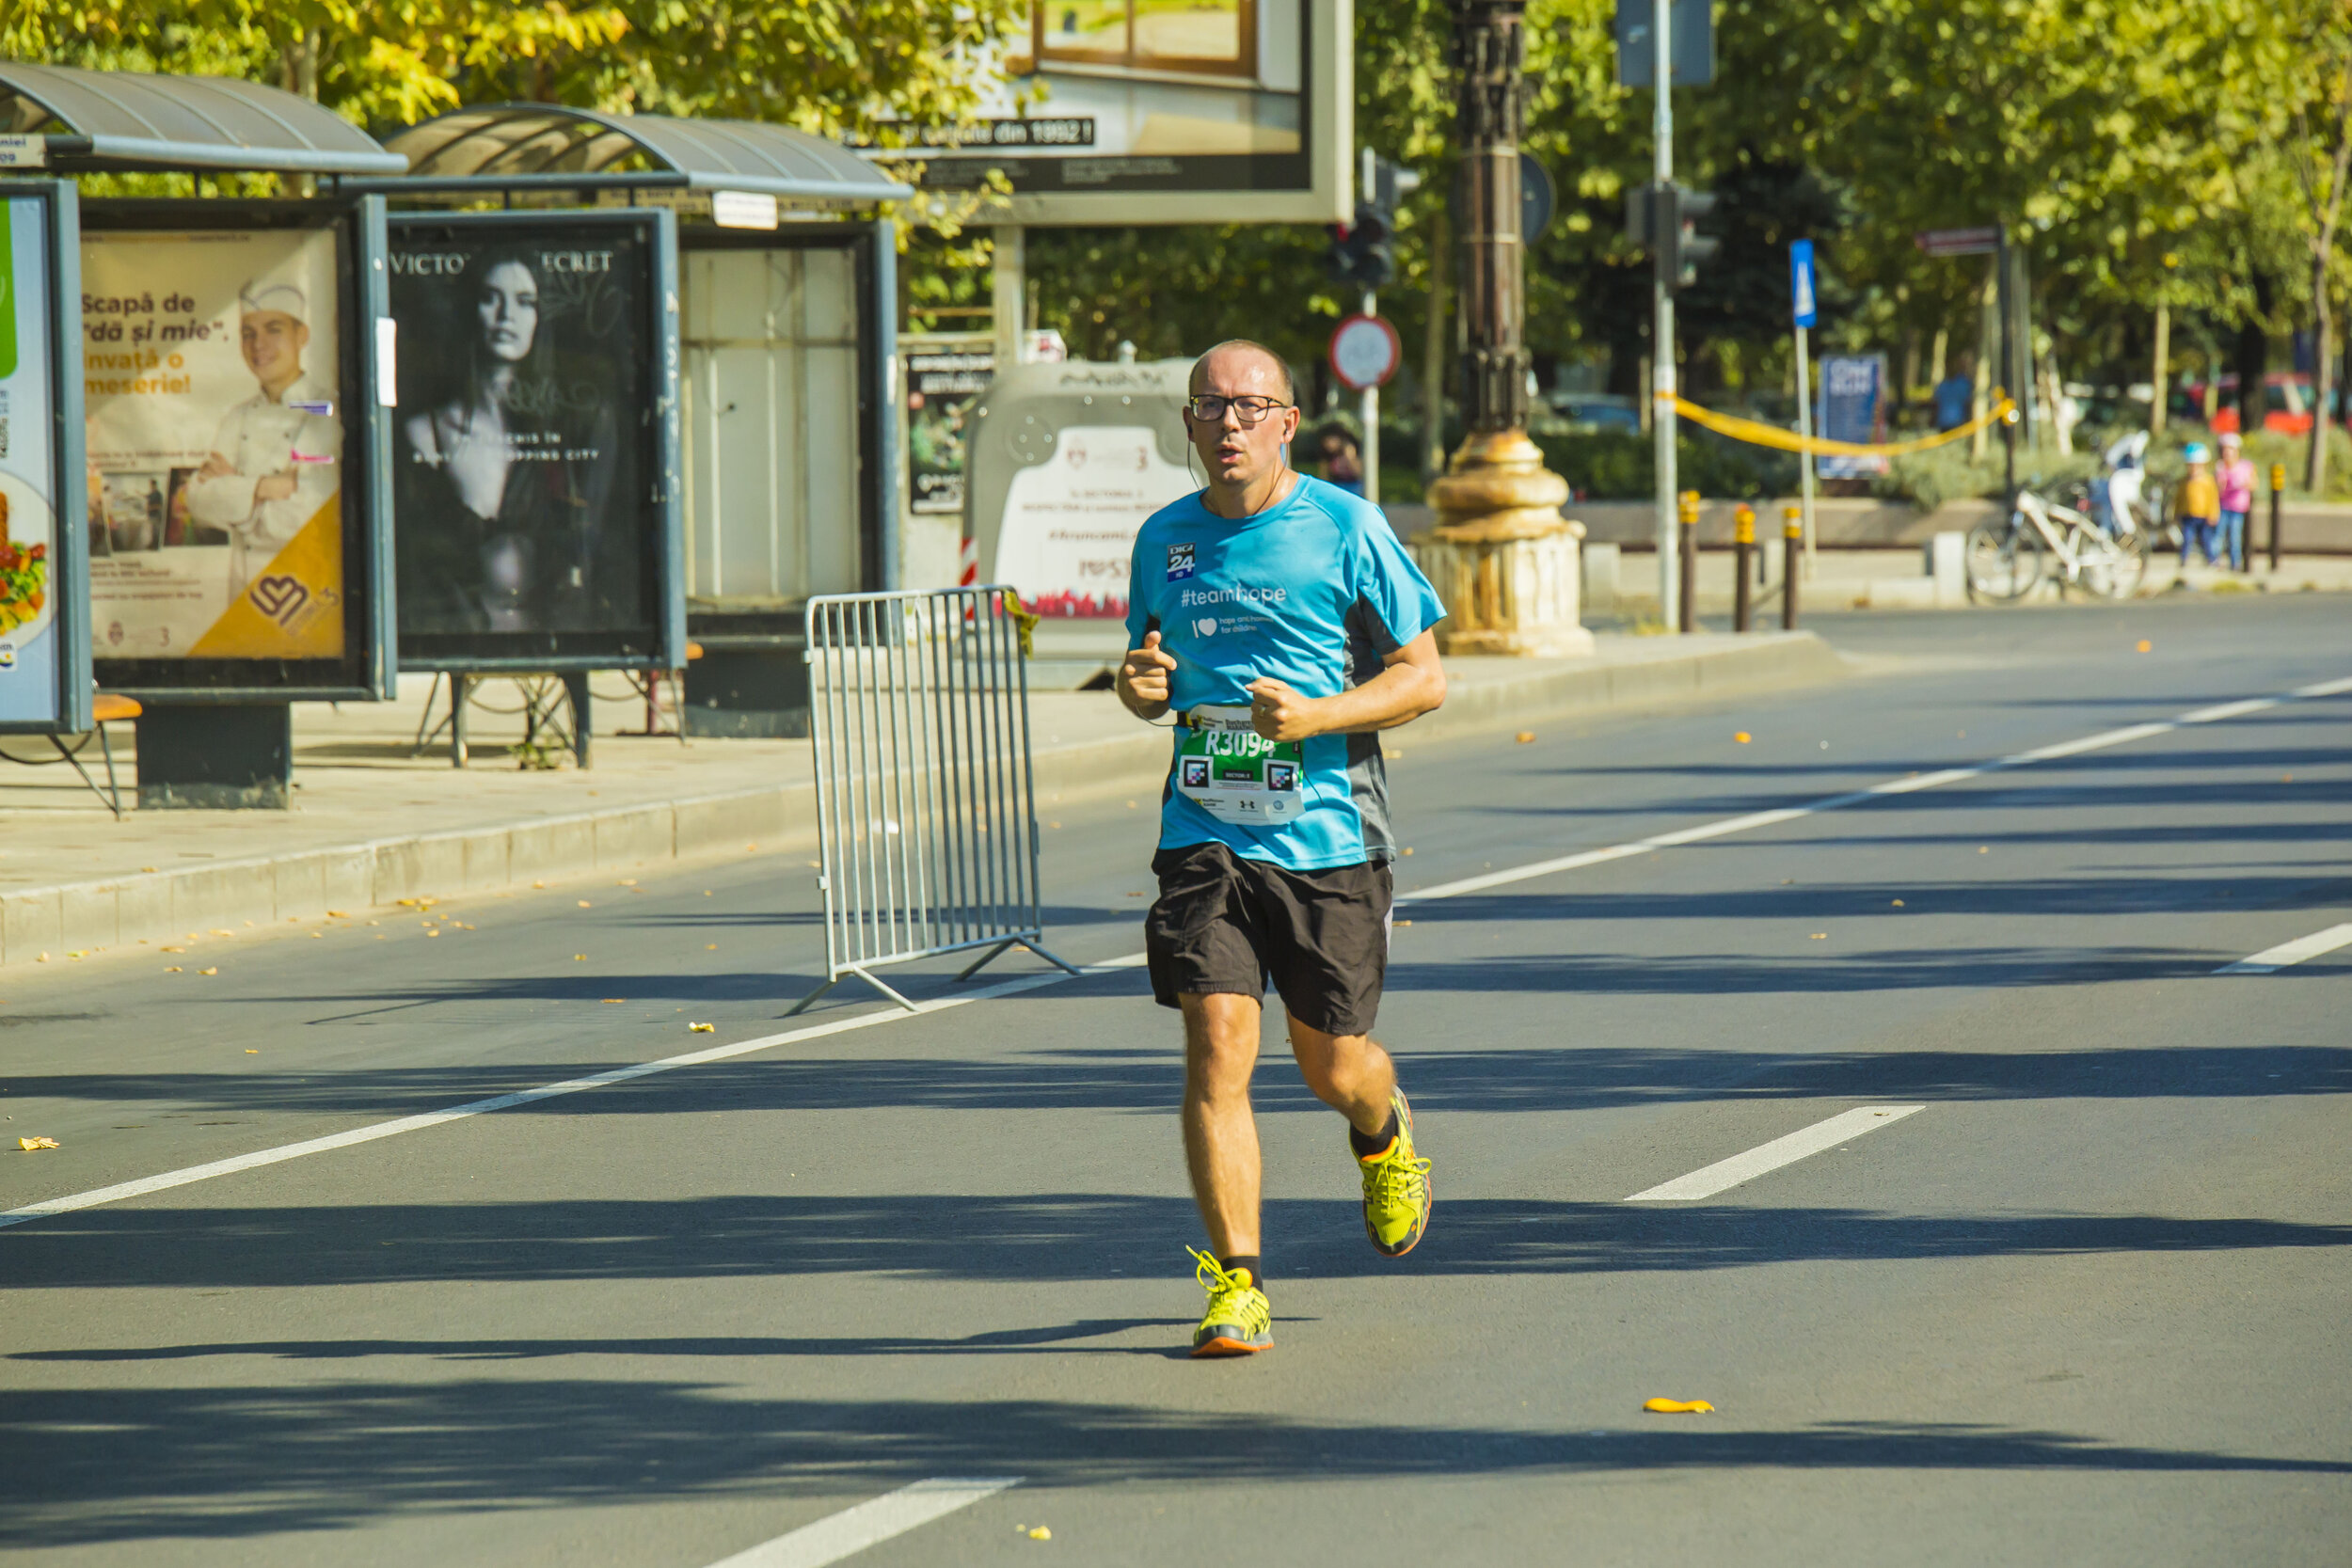 Florin Negruțiu Digi 24_Maratonul București 2019_fotoi M Solovastru.jpg